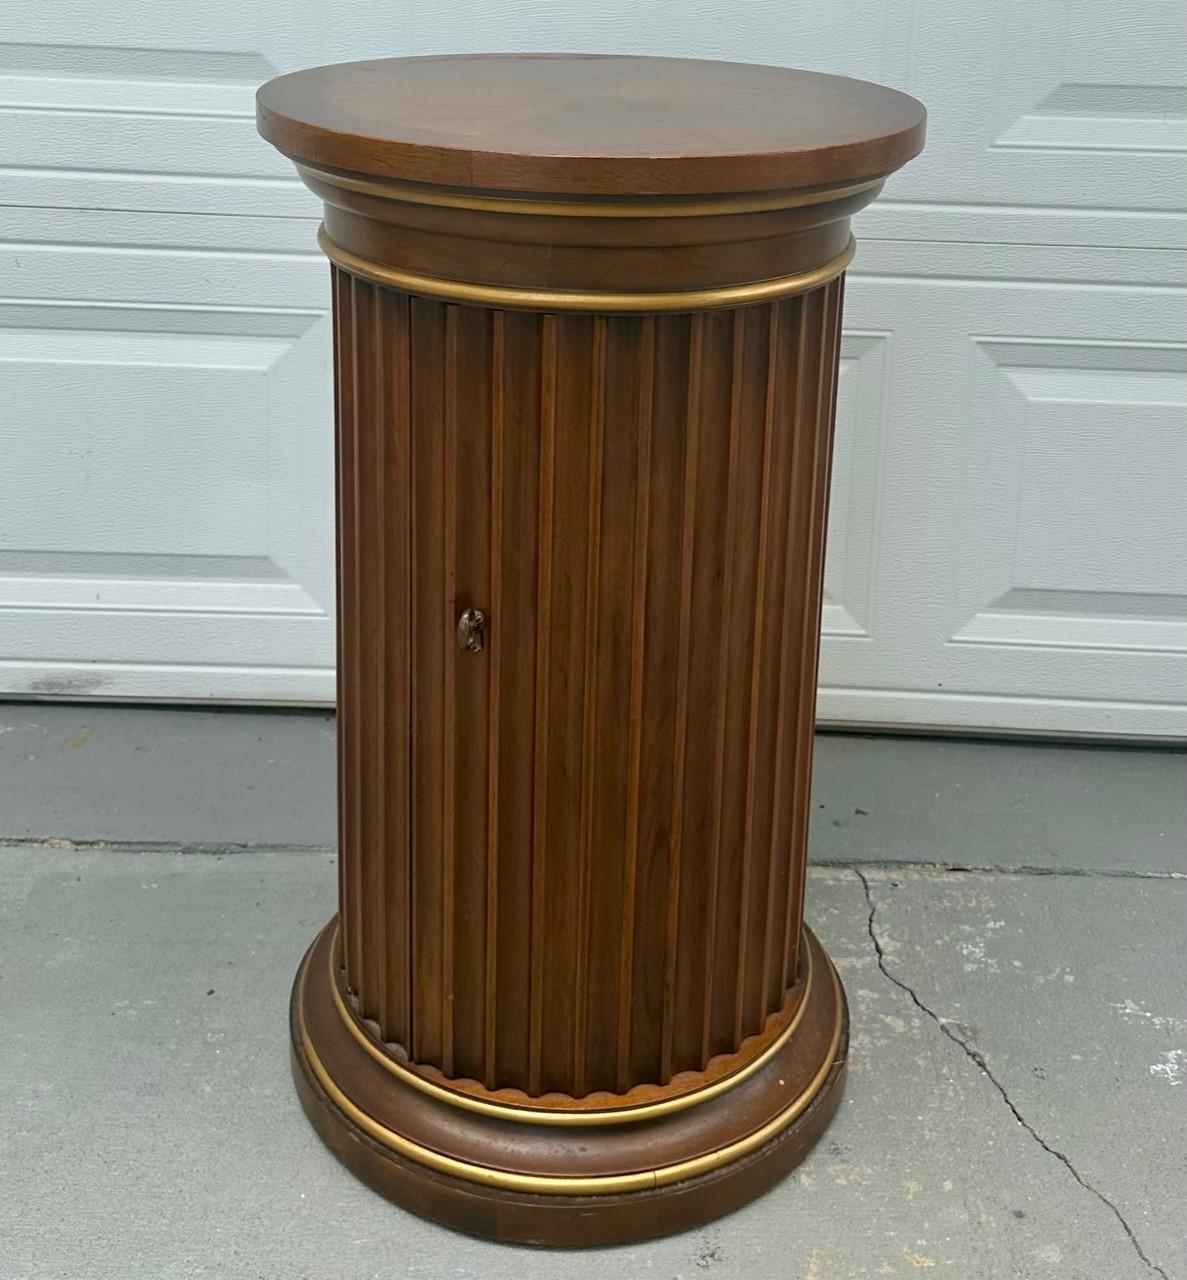 Vintage Drexel Et- Cetera Colonne cannelée Parquetry Top Pedestal Cabinet End Table.

Le meuble à pied de 30